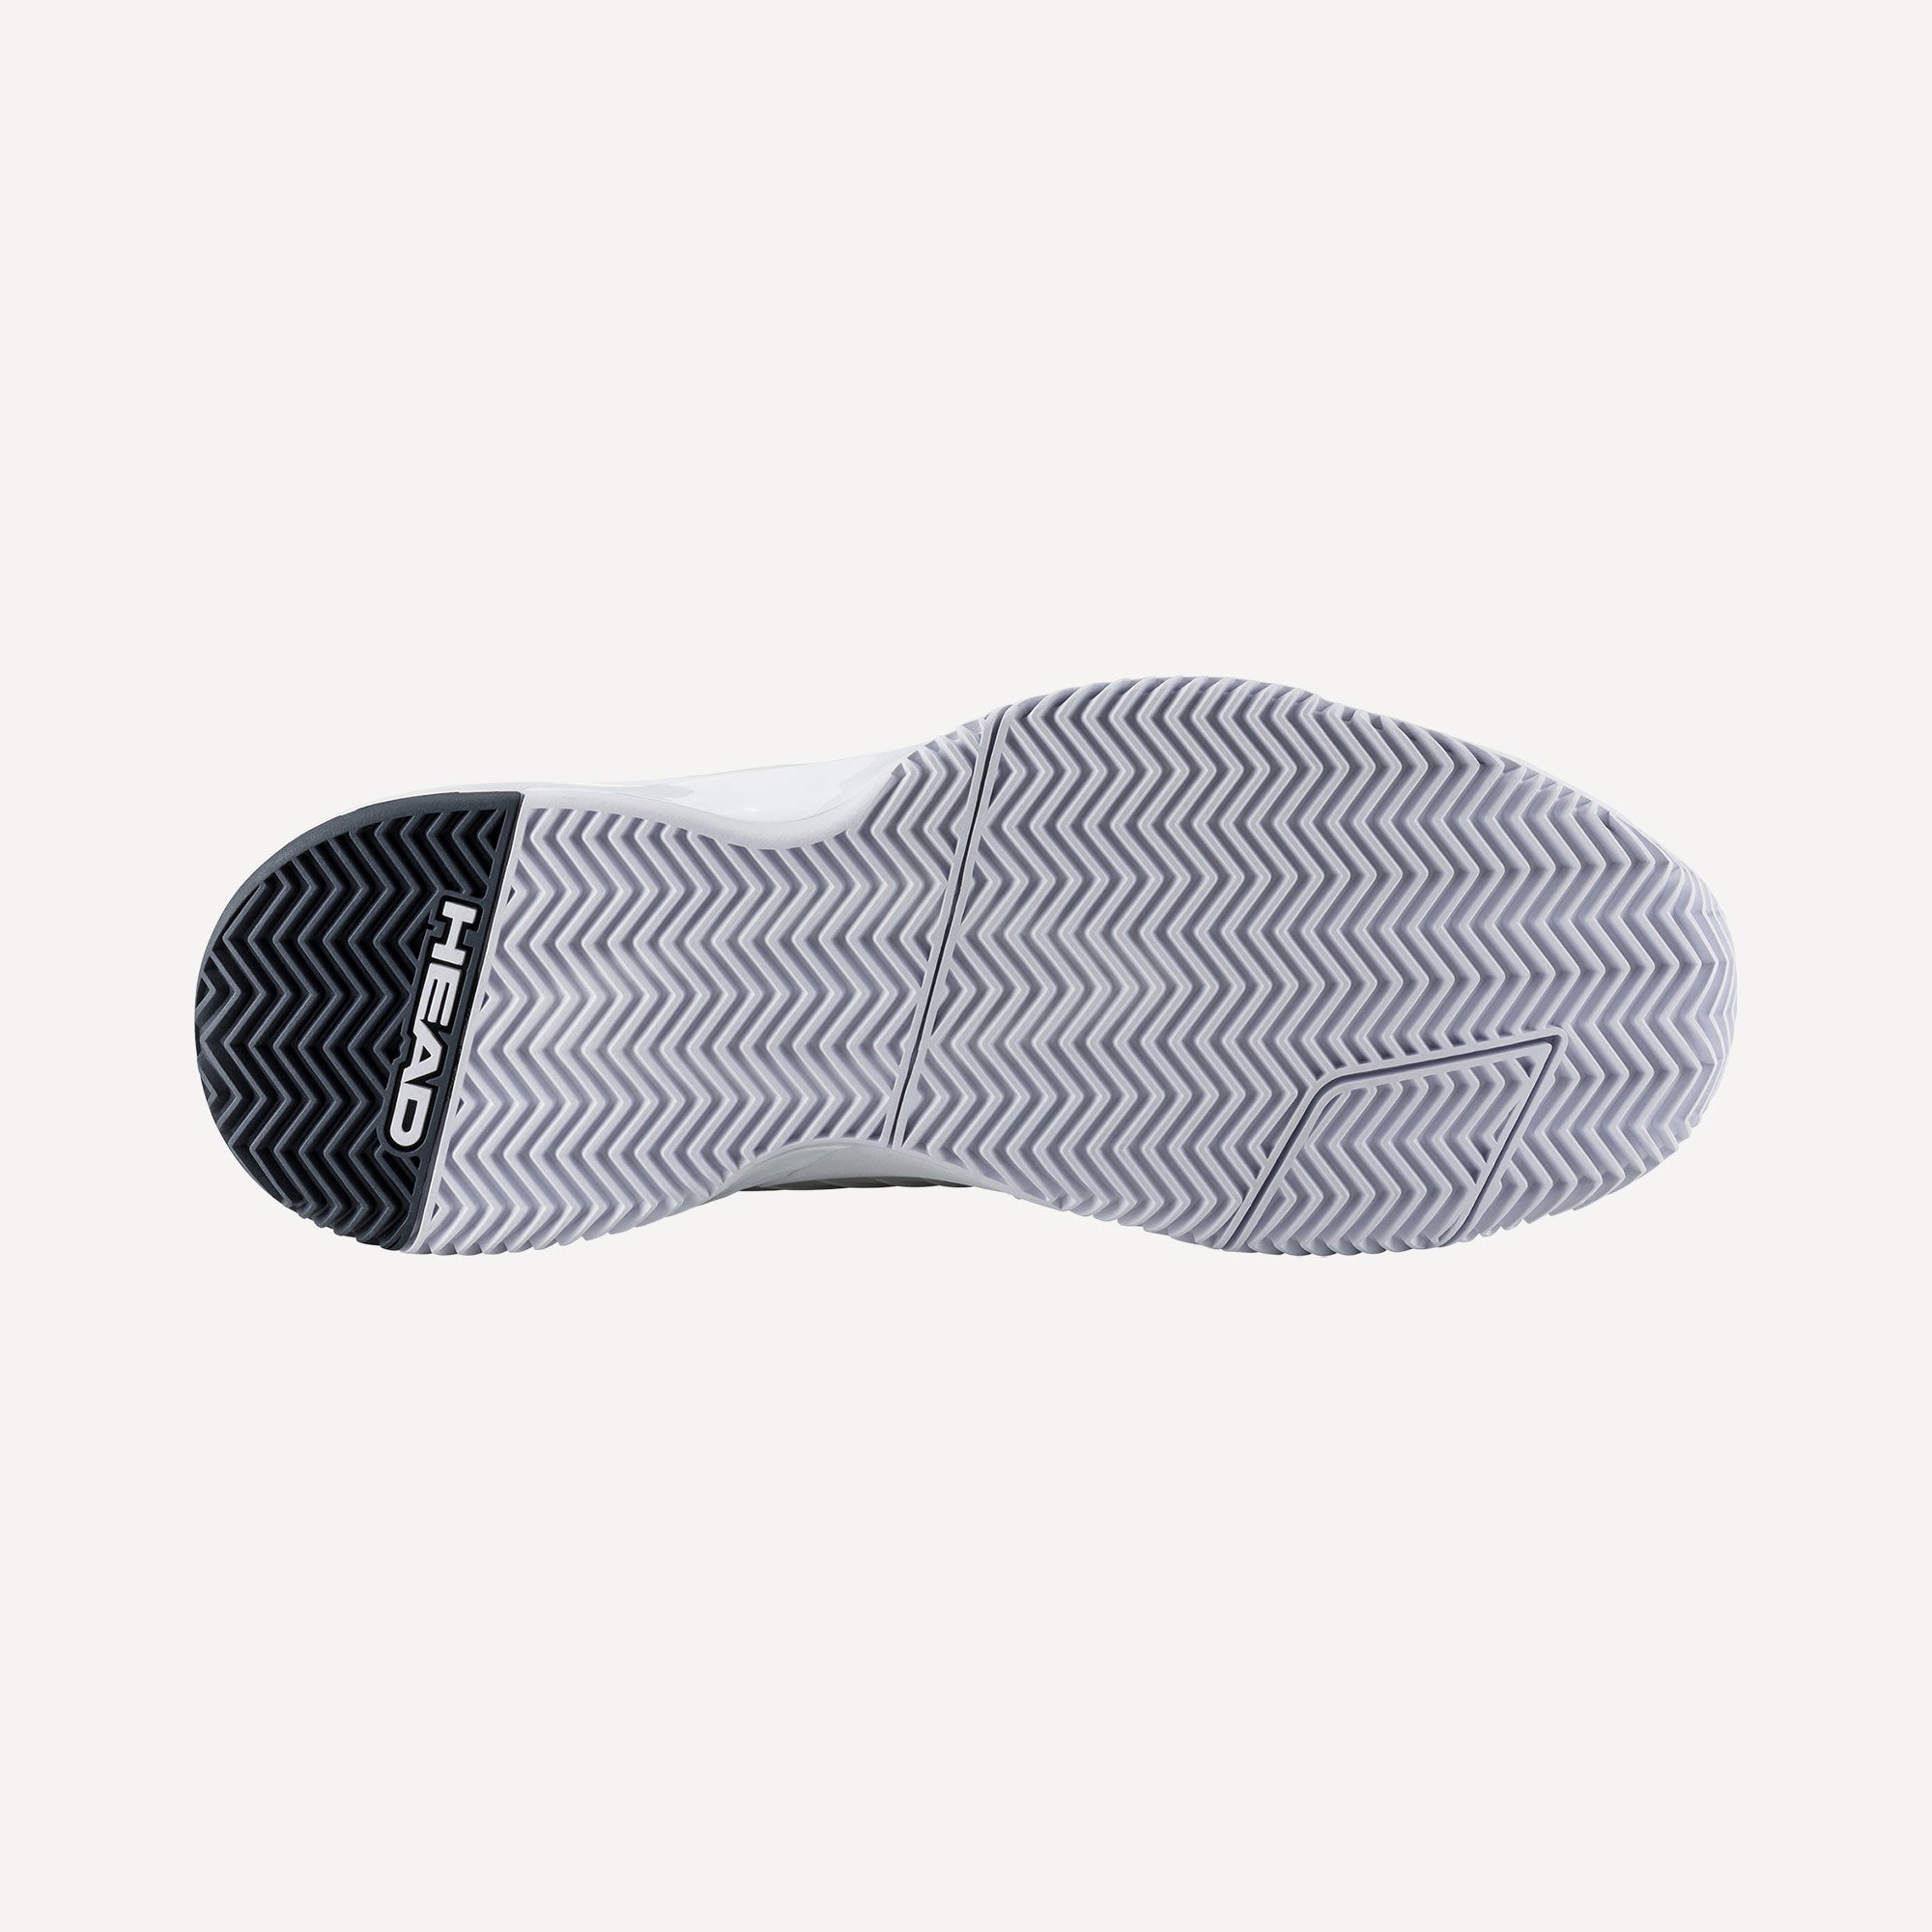 HEAD Revolt Pro 4.5 Men's Clay Court Tennis Shoes - White (2)